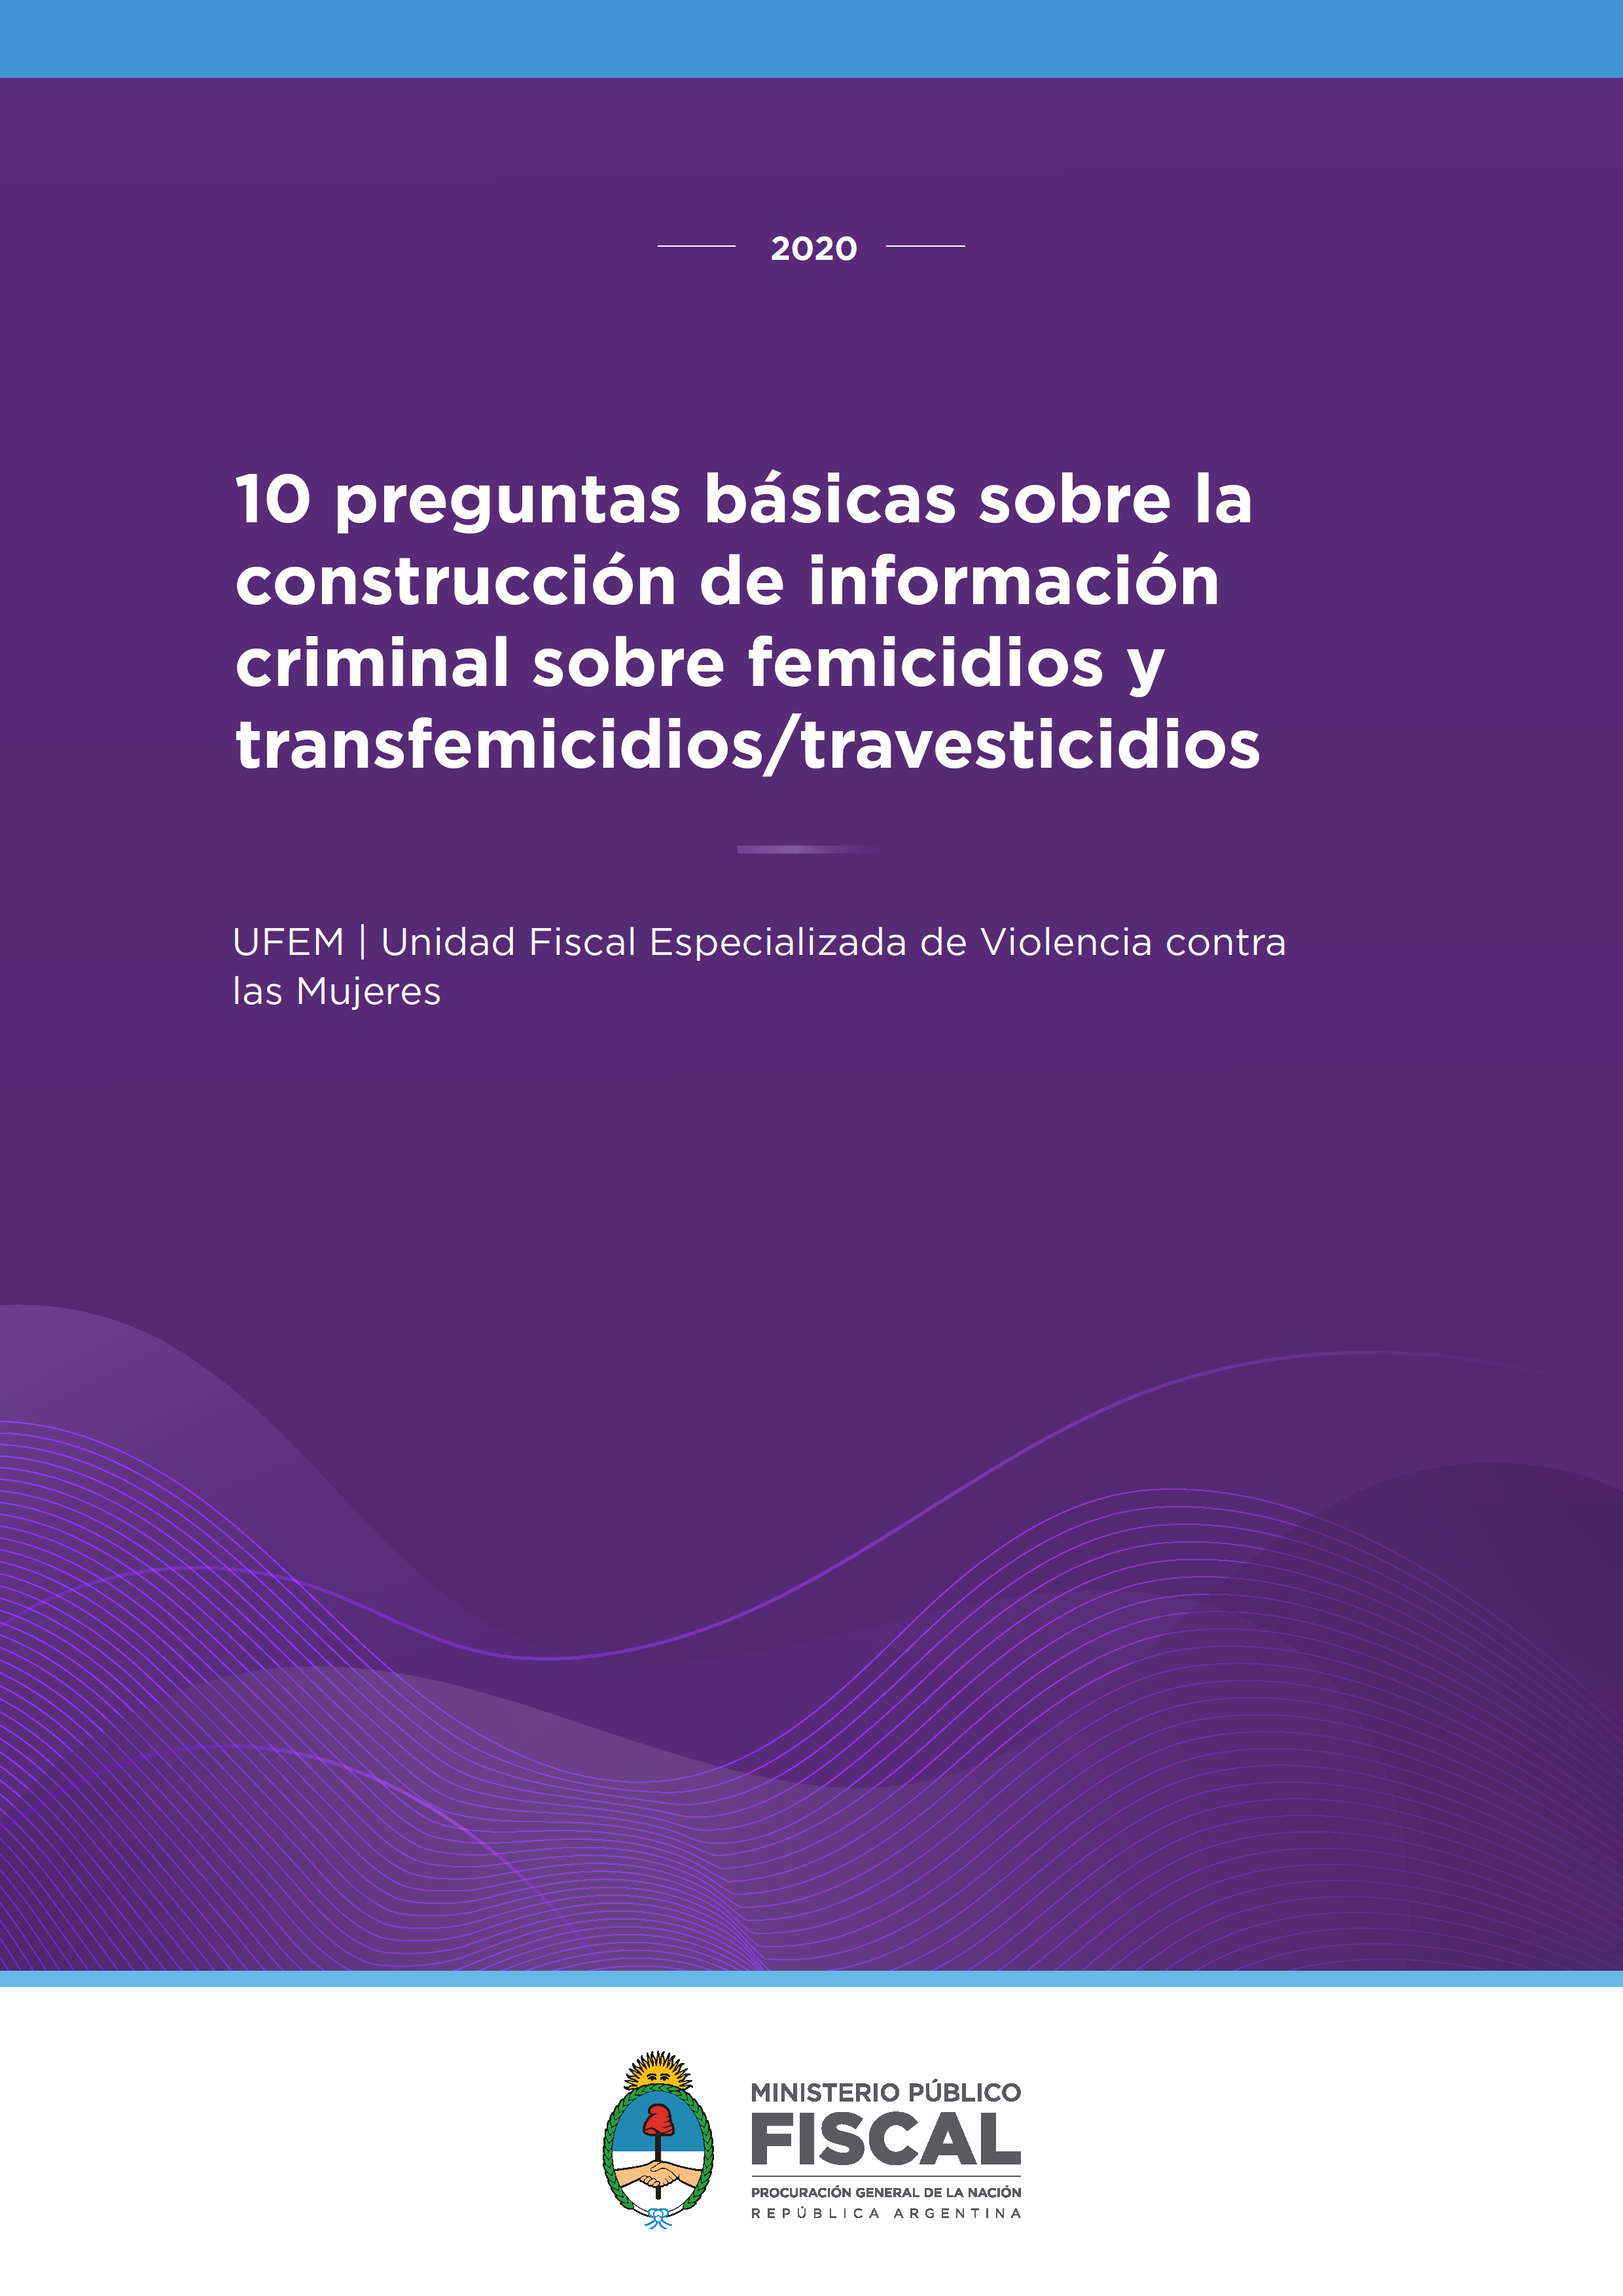 10 preguntas básicas sobre la construcción de información criminal sobre femicidios y transfemicidios/travesticidios